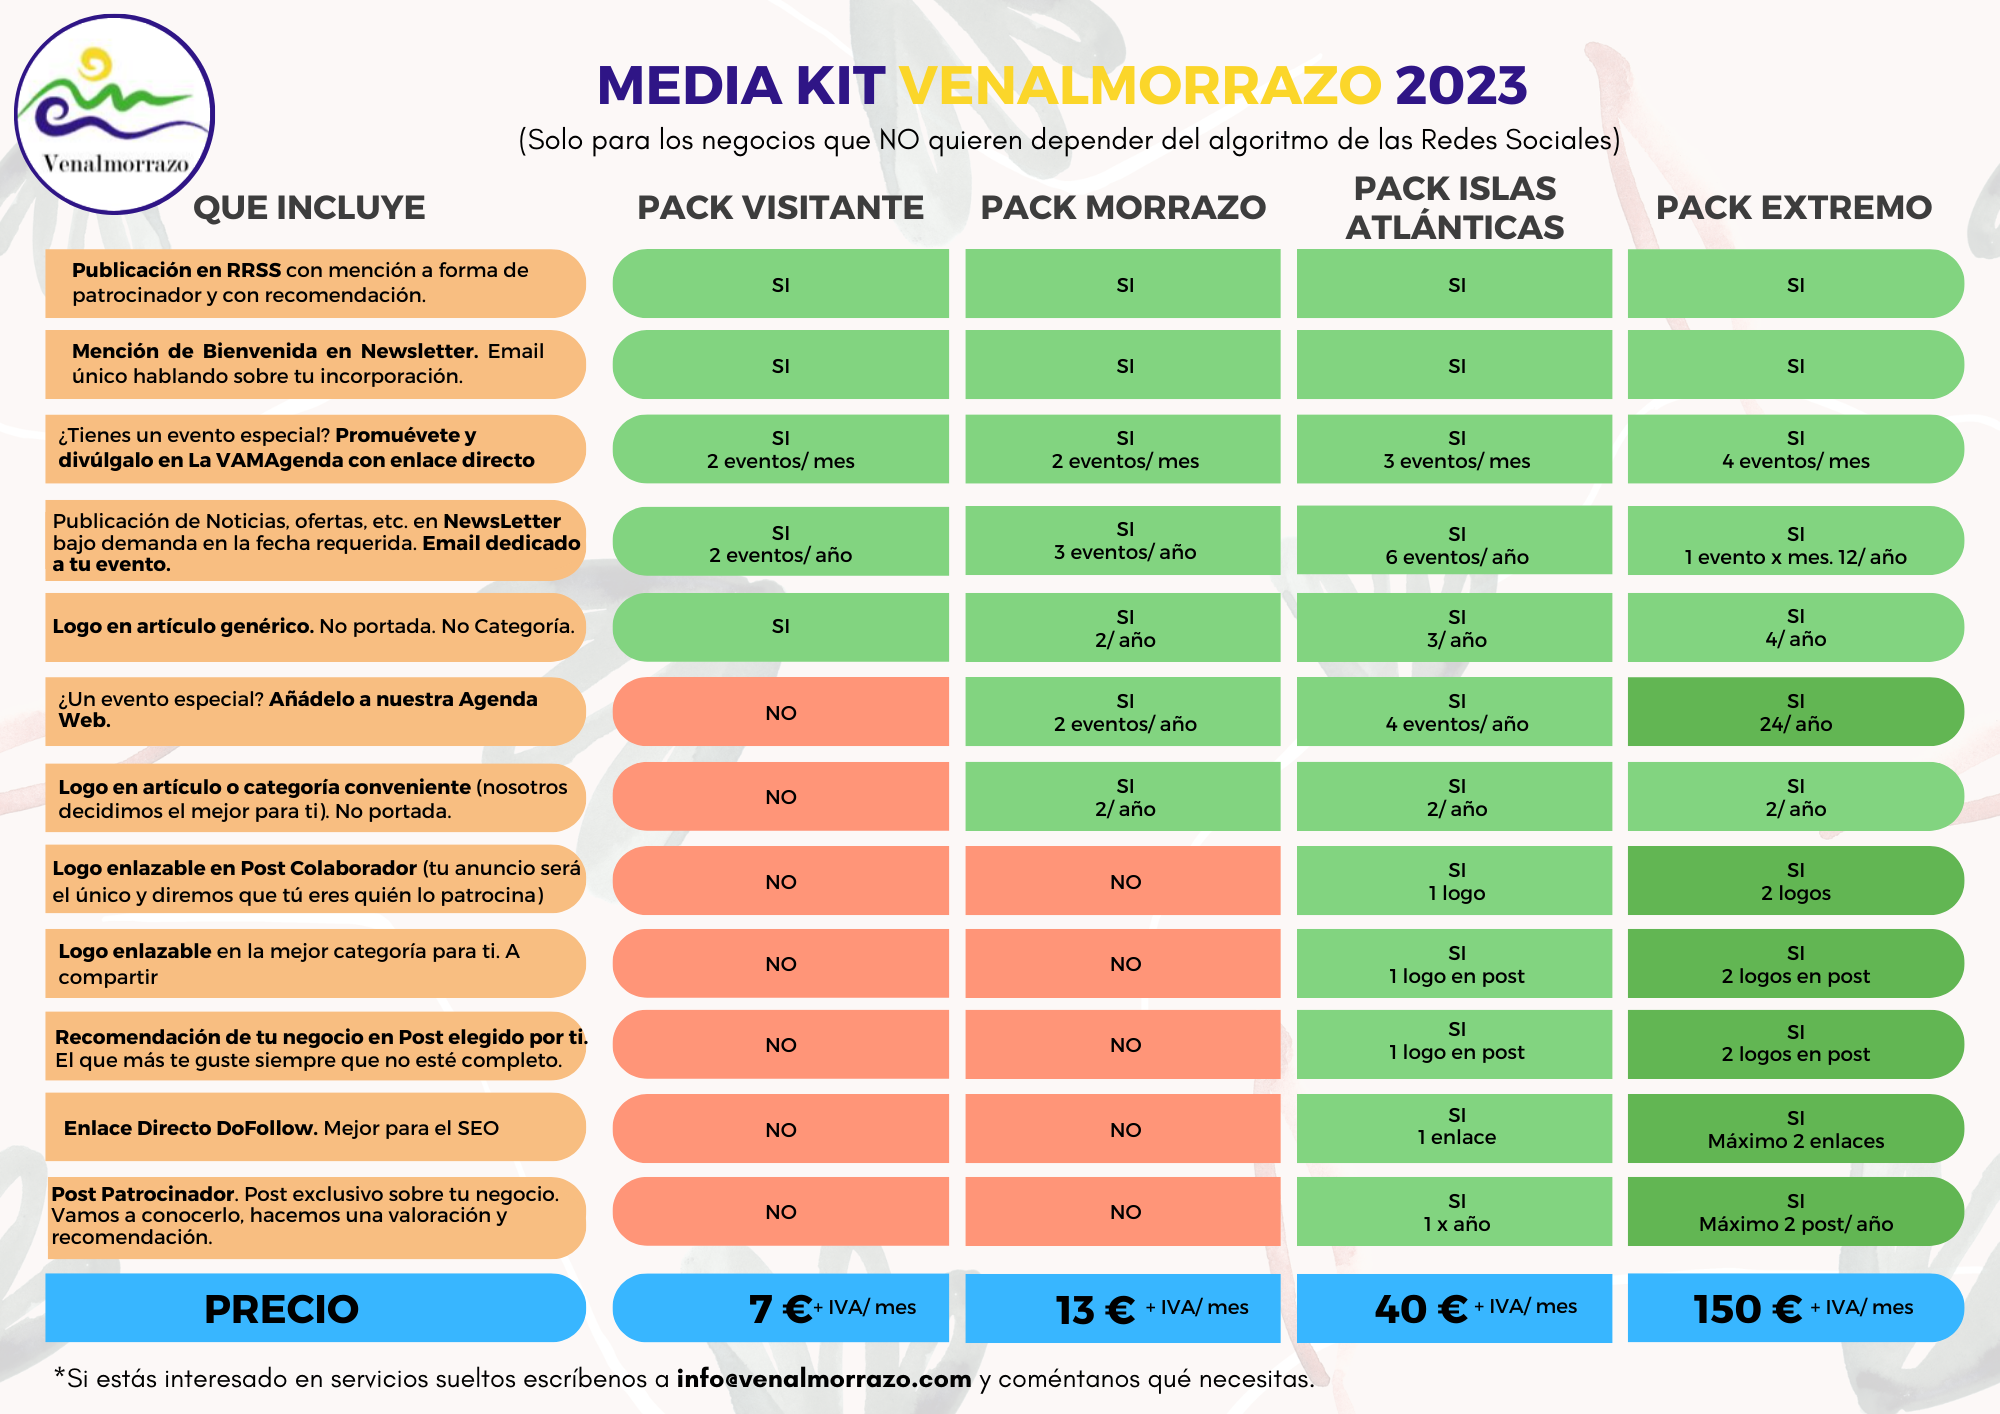 MediaKit Venalmorrazo, precios más económicos para negocios del Morrazo